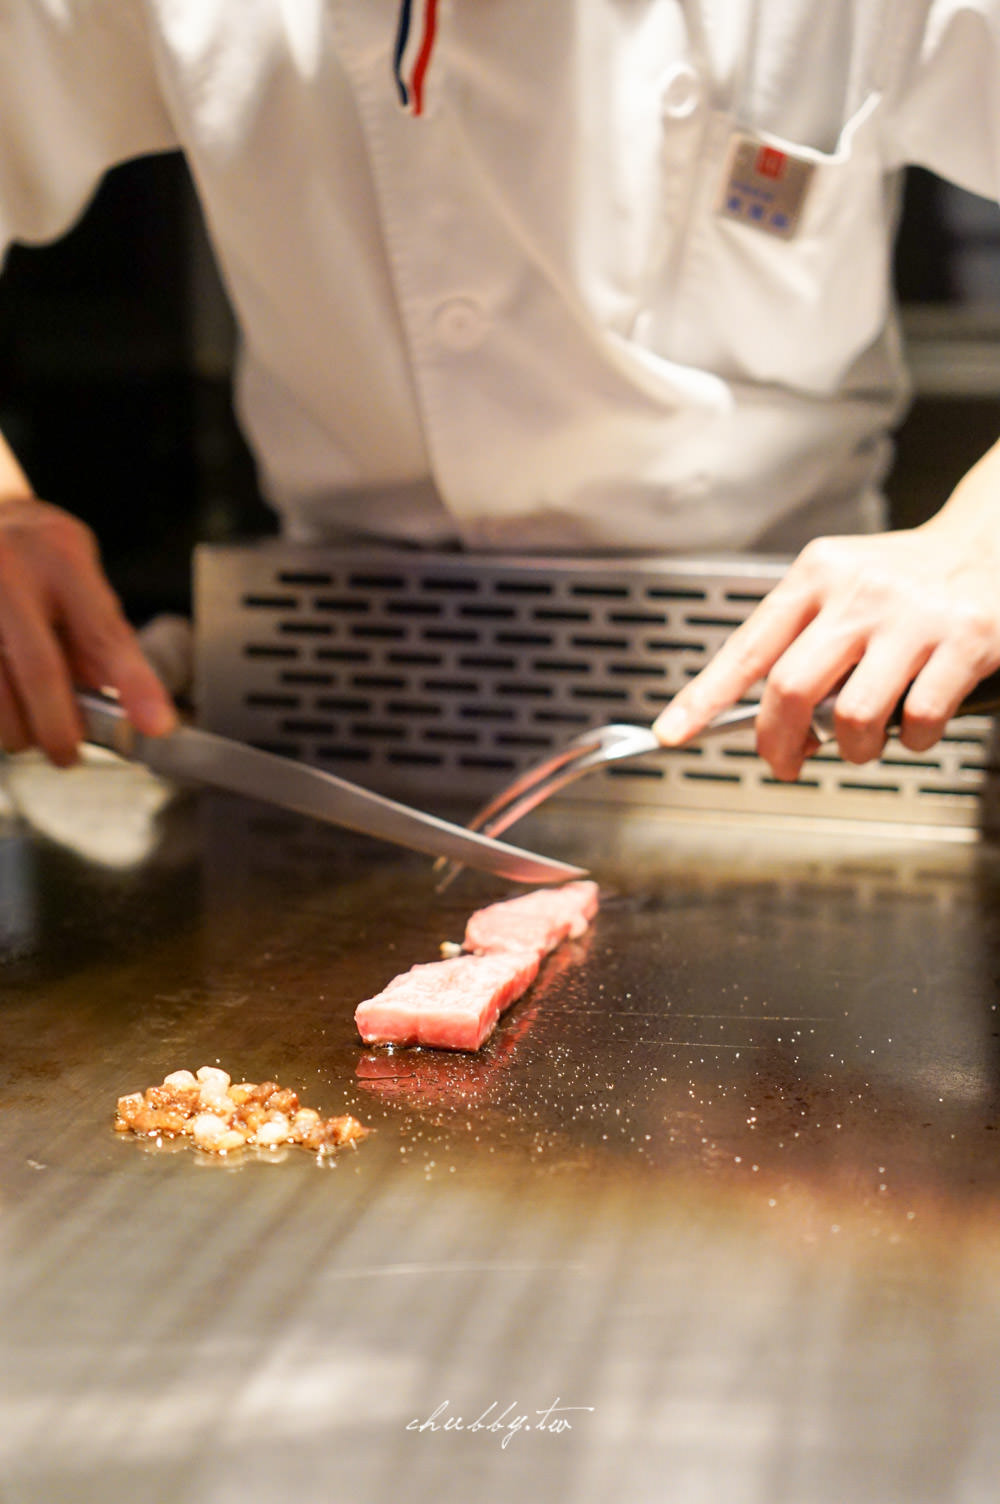 日本A5和牛的最完美料理方式：夏慕尼新香榭鐵板燒